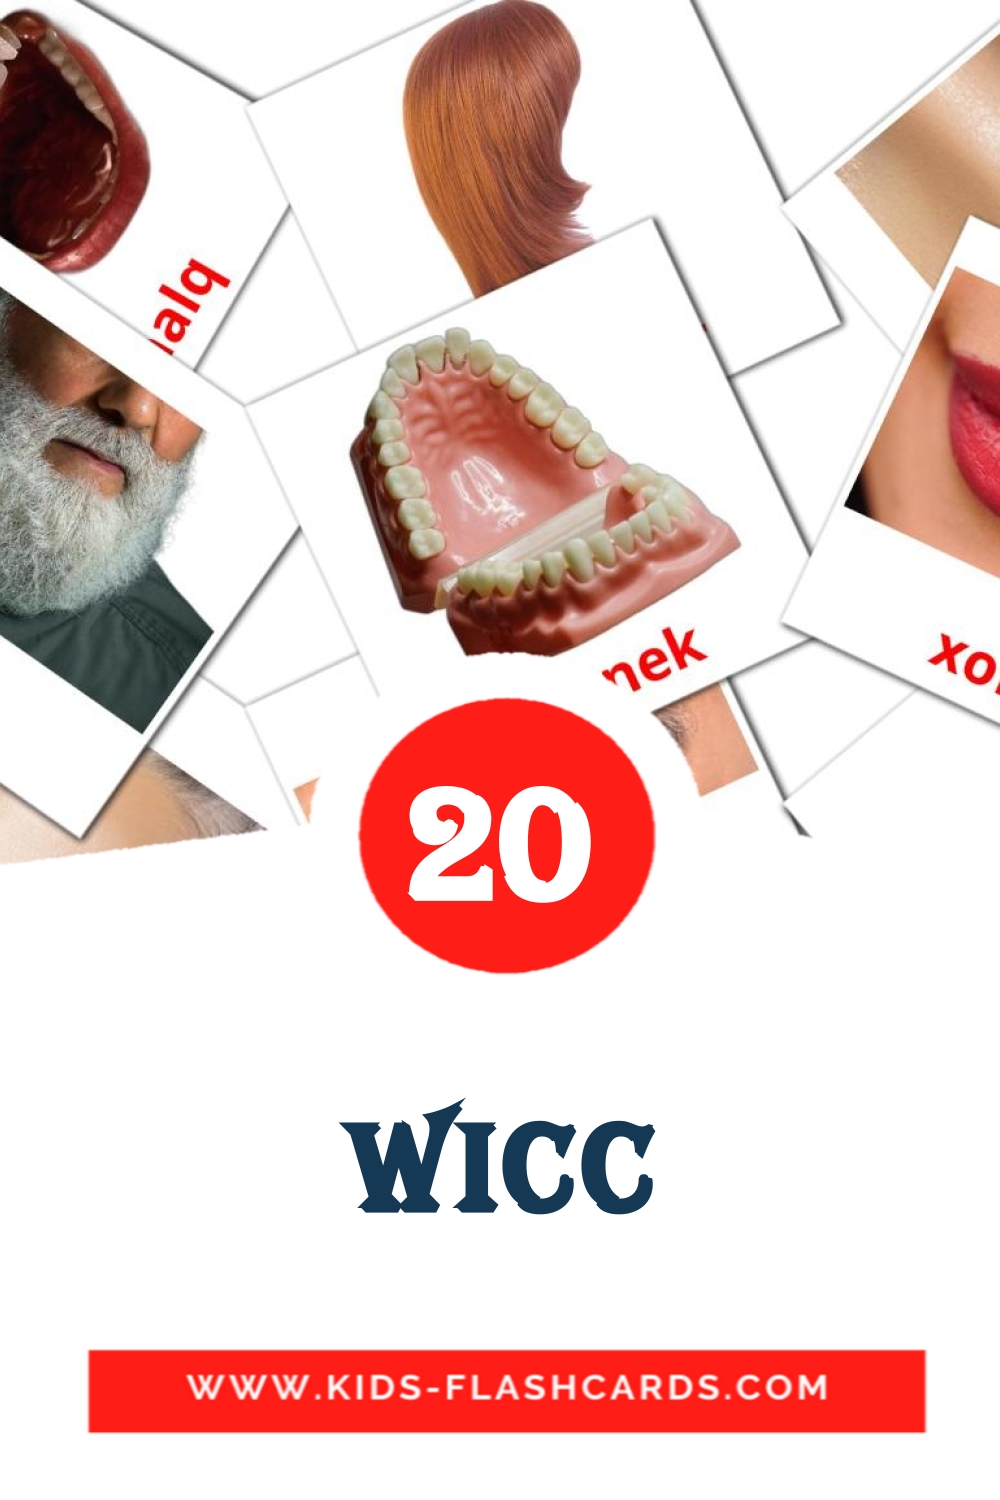 20 Wicc fotokaarten voor kleuters in het maltezer